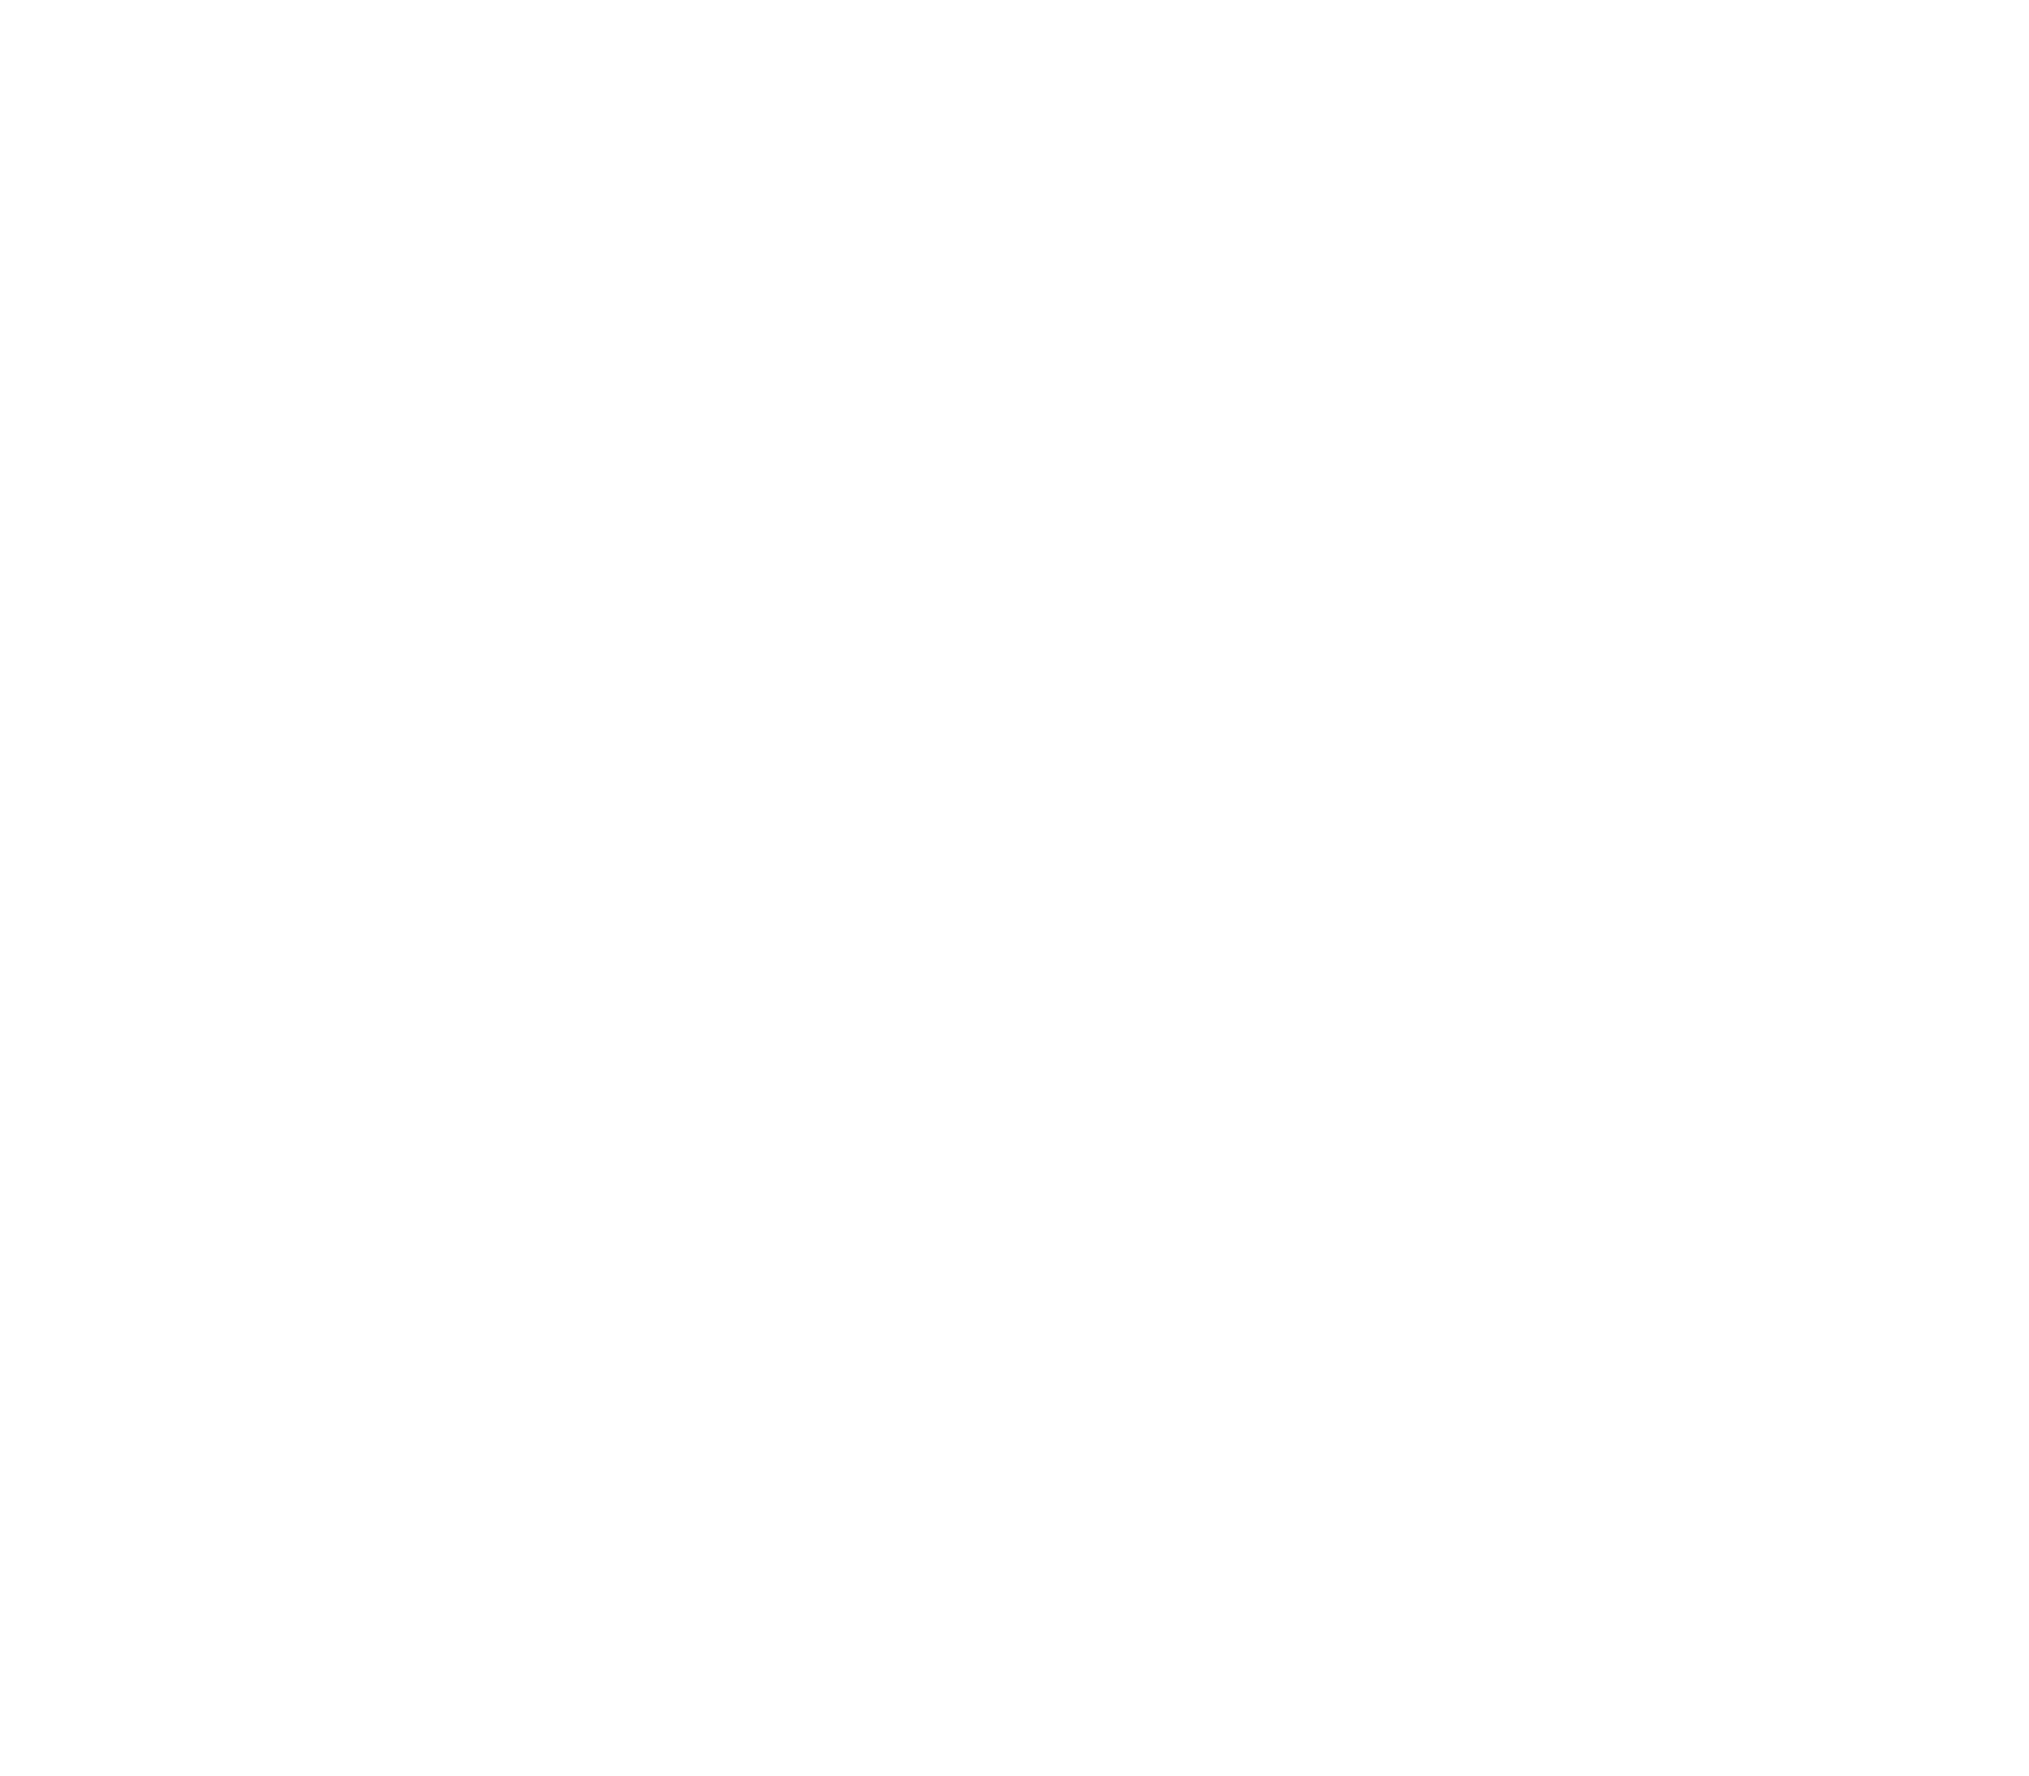 PB & E